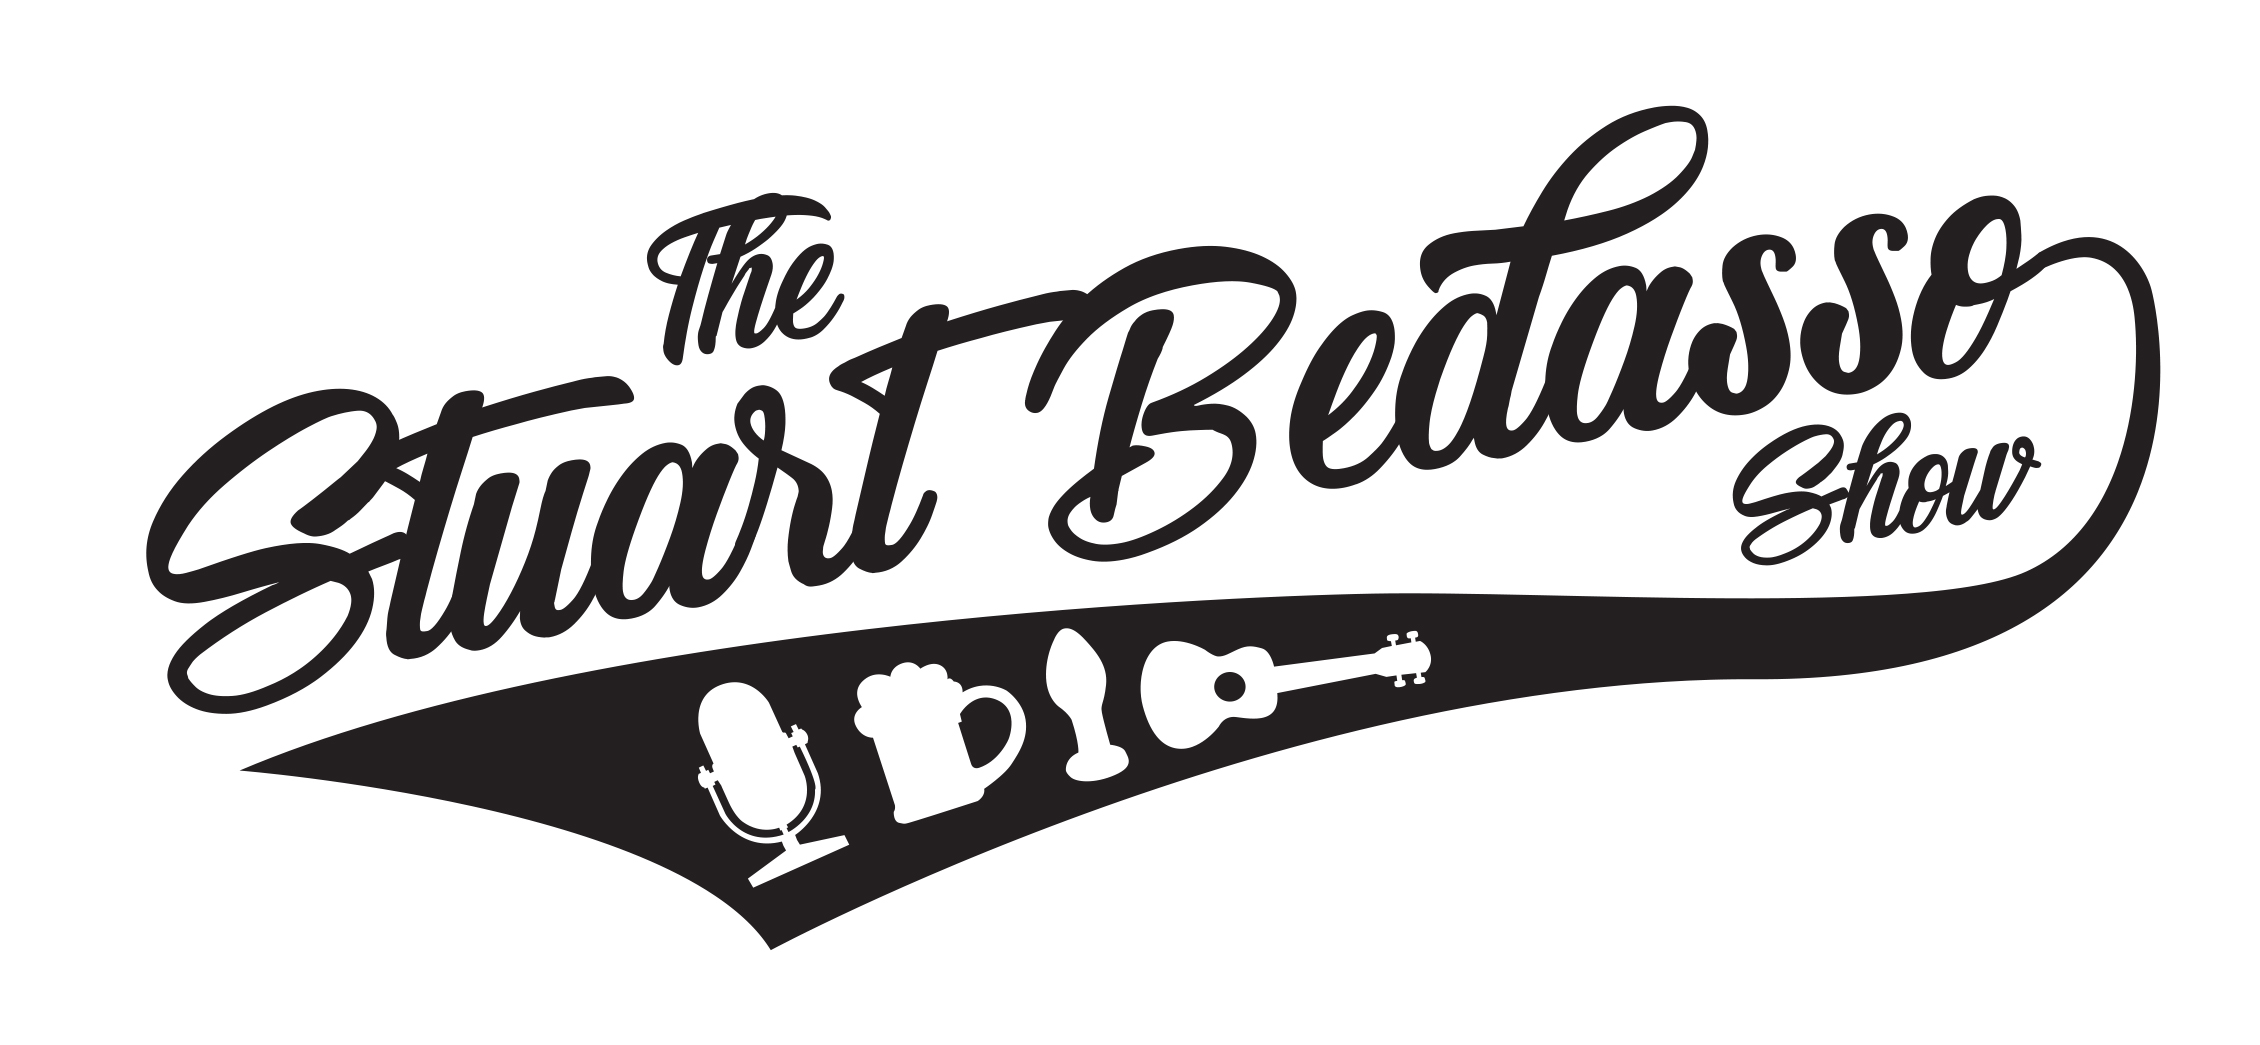 Stuart Bedasso Show logo